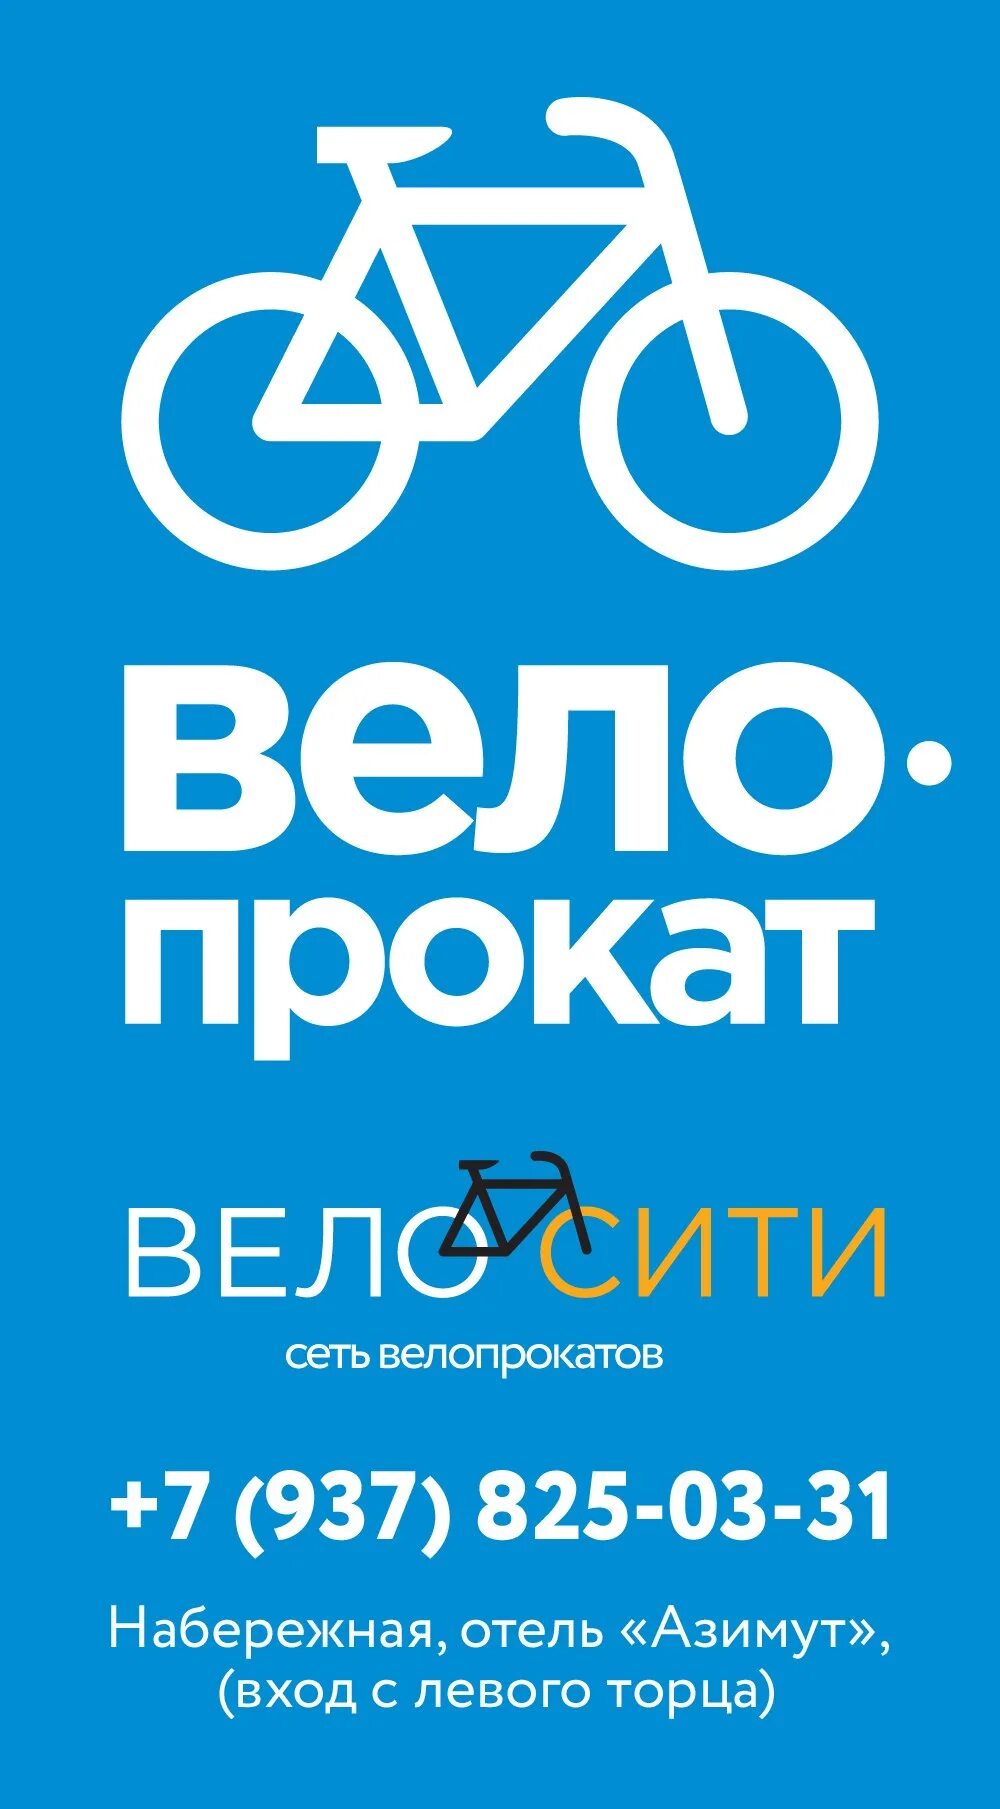 Велопрокат реклама. Прокат велосипедов реклама. Баннер велопрокат. Реклама велопроката.